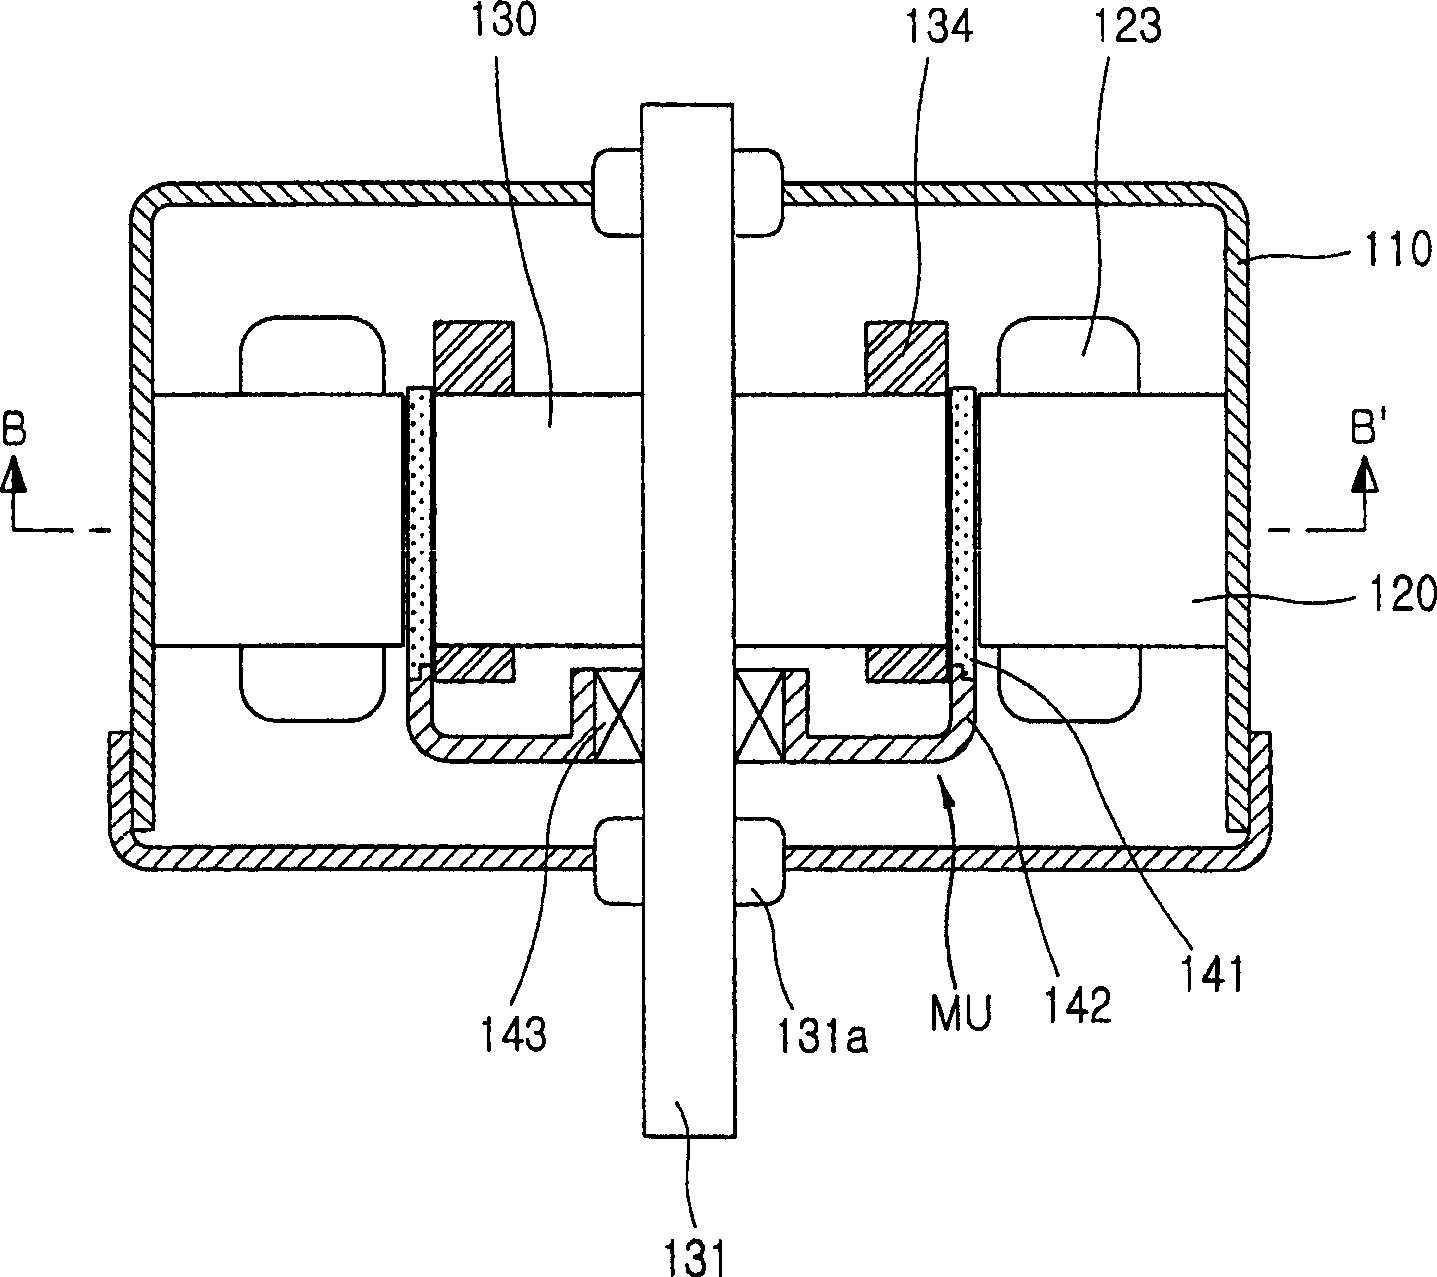 Single-phase induction motor